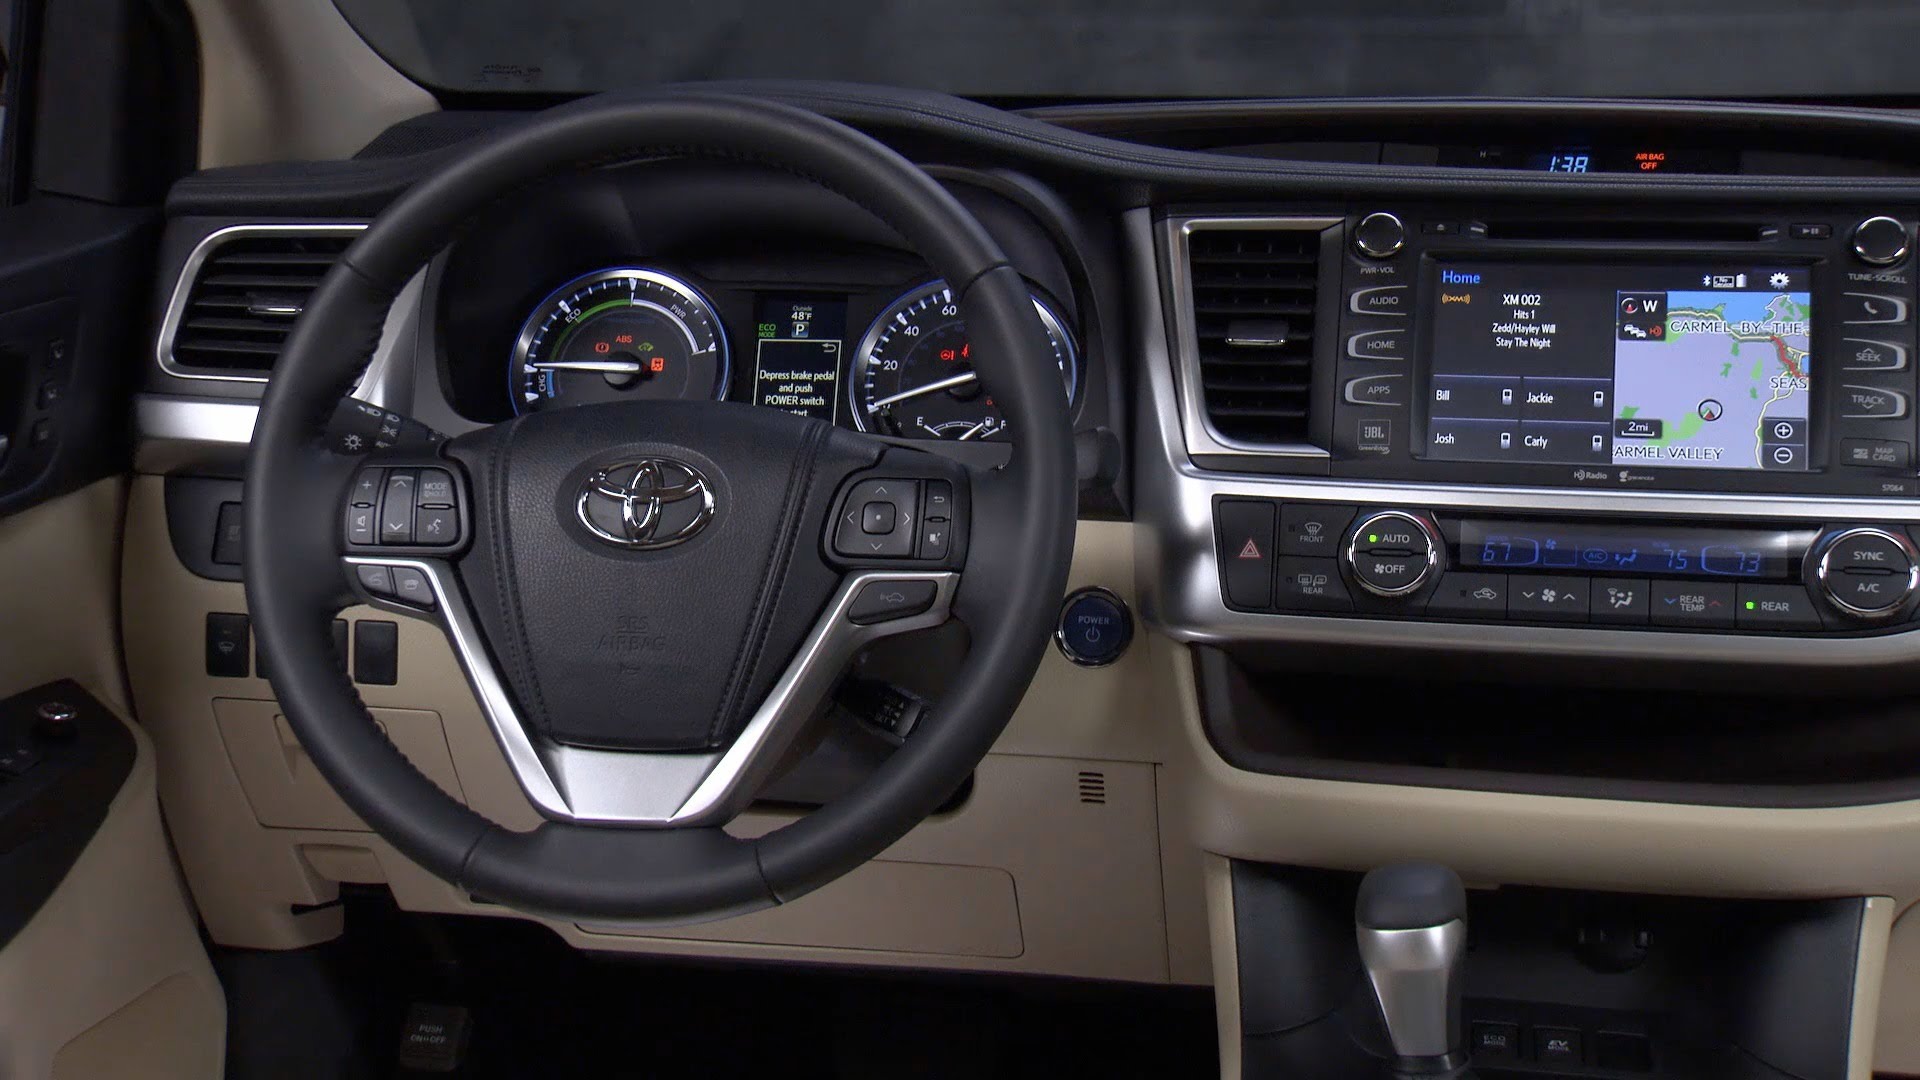 2014 Toyota Highlander Hybrid Backgrounds on Wallpapers Vista